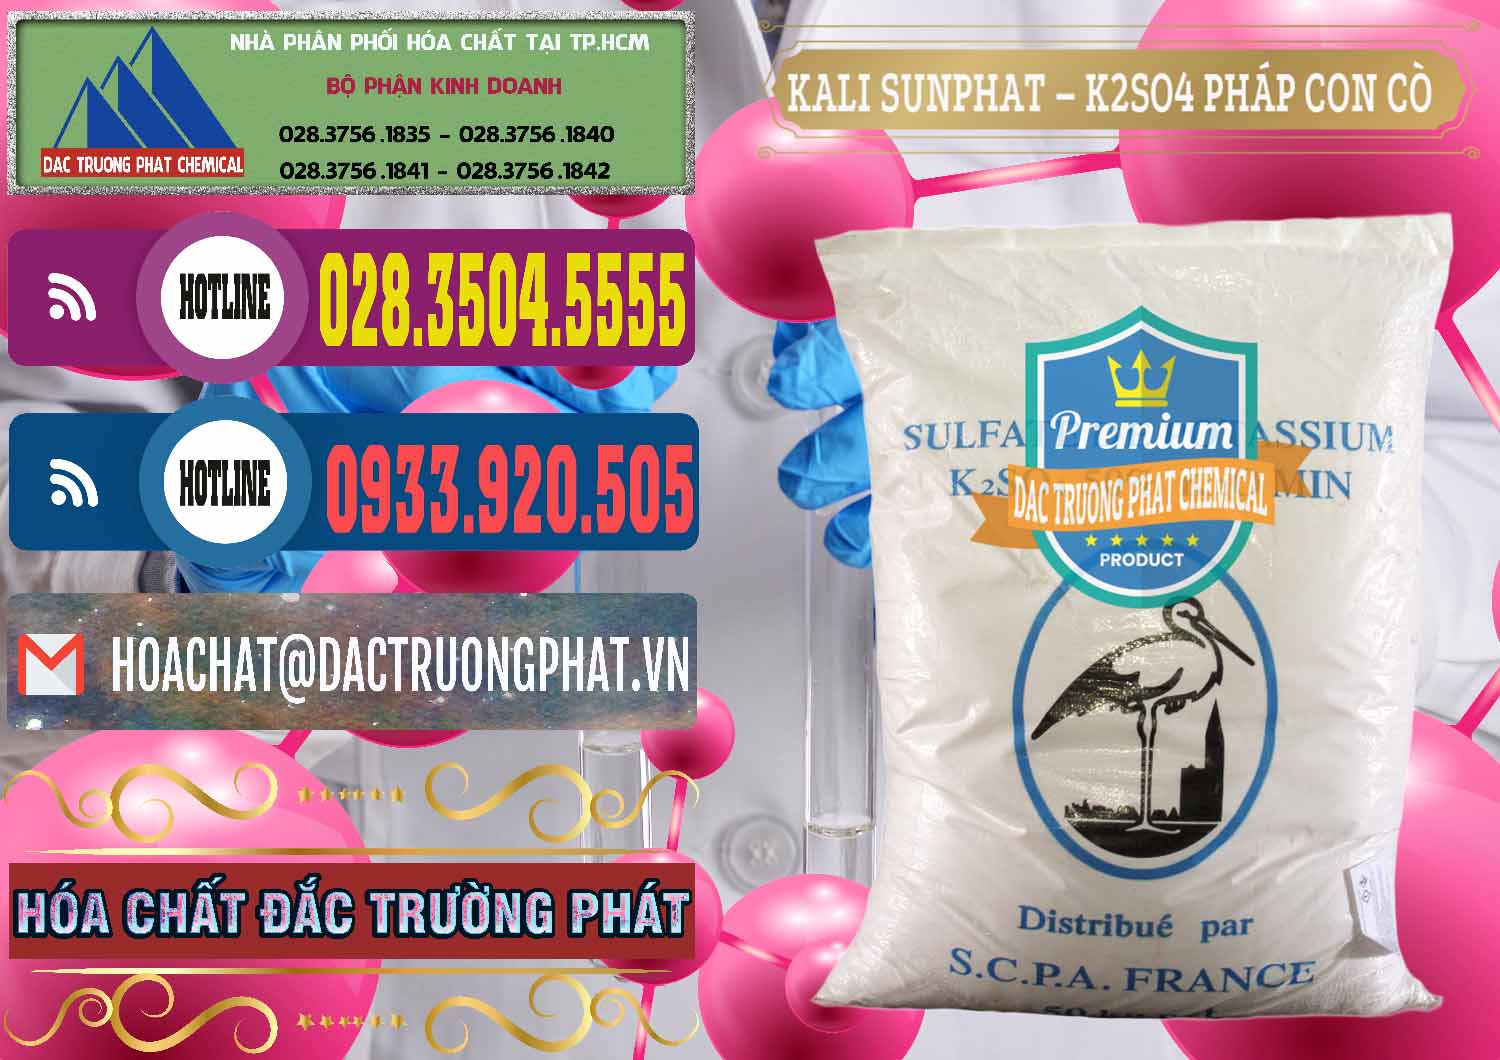 Nơi kinh doanh và bán Kali Sunphat – K2SO4 Con Cò Pháp France - 0083 - Công ty cung cấp _ bán hóa chất tại TP.HCM - muabanhoachat.com.vn